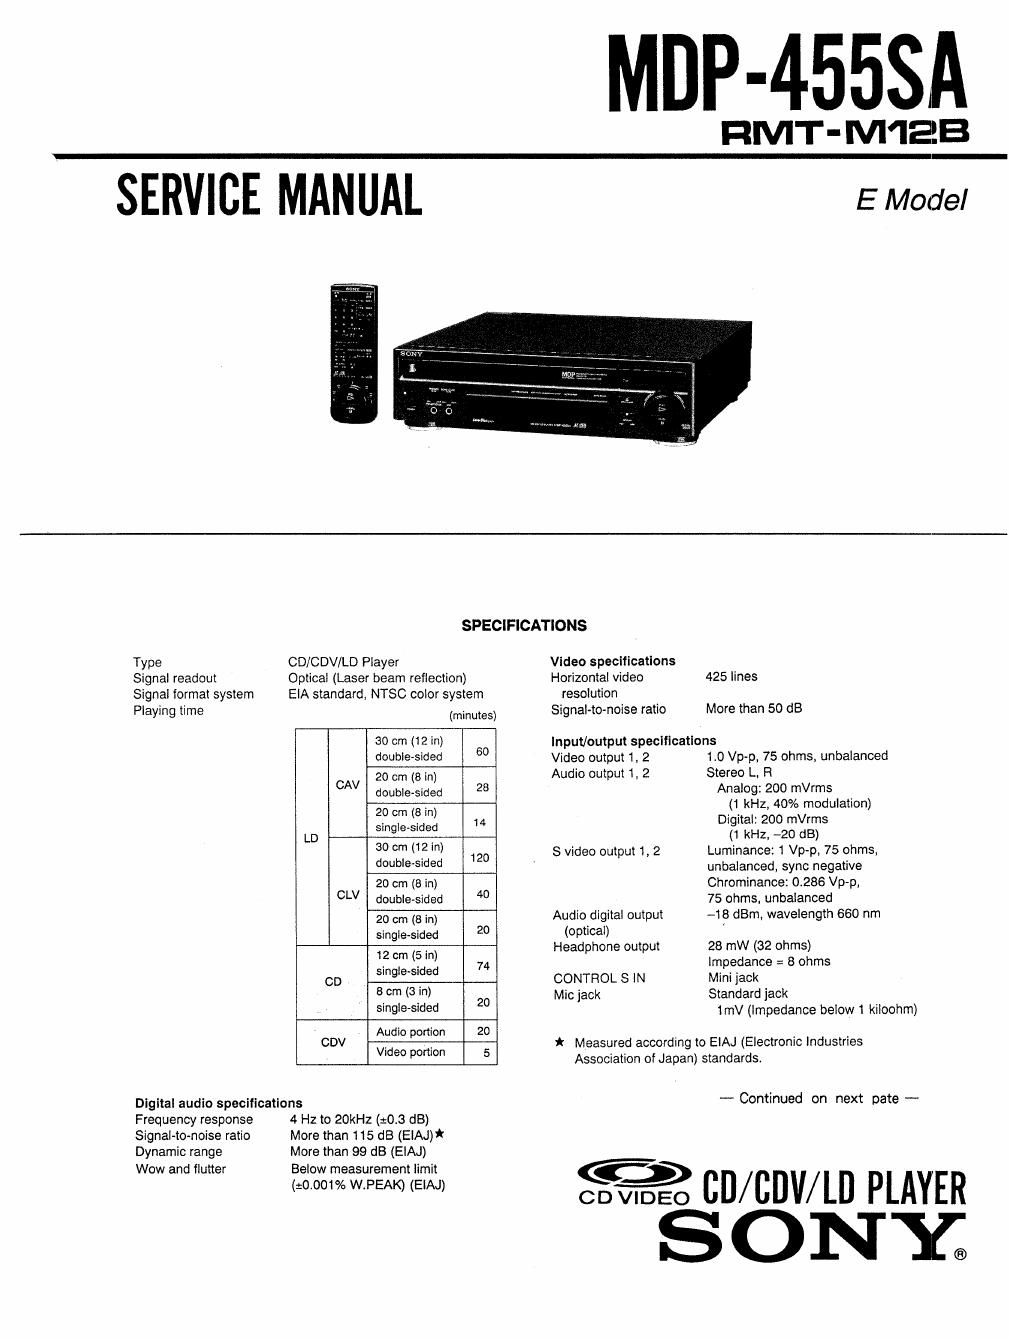 sony mdp 455 sa service manual